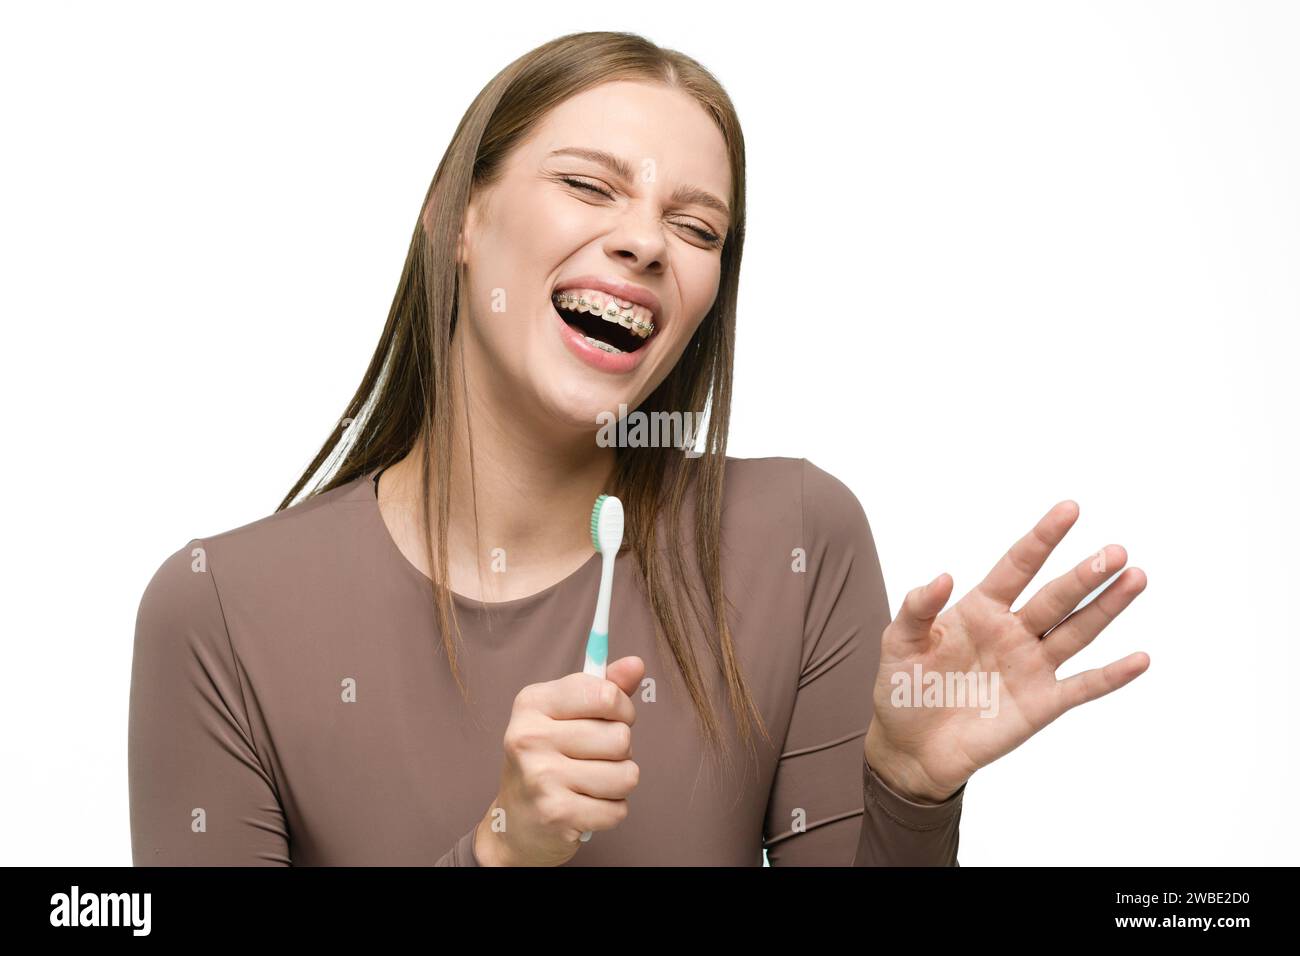 Giovane bella donna che canta allo spazzolino isolato su sfondo bianco. La ragazza sorride ampiamente mostrando bellissimi denti dritti con l'apparecchio. Foto Stock